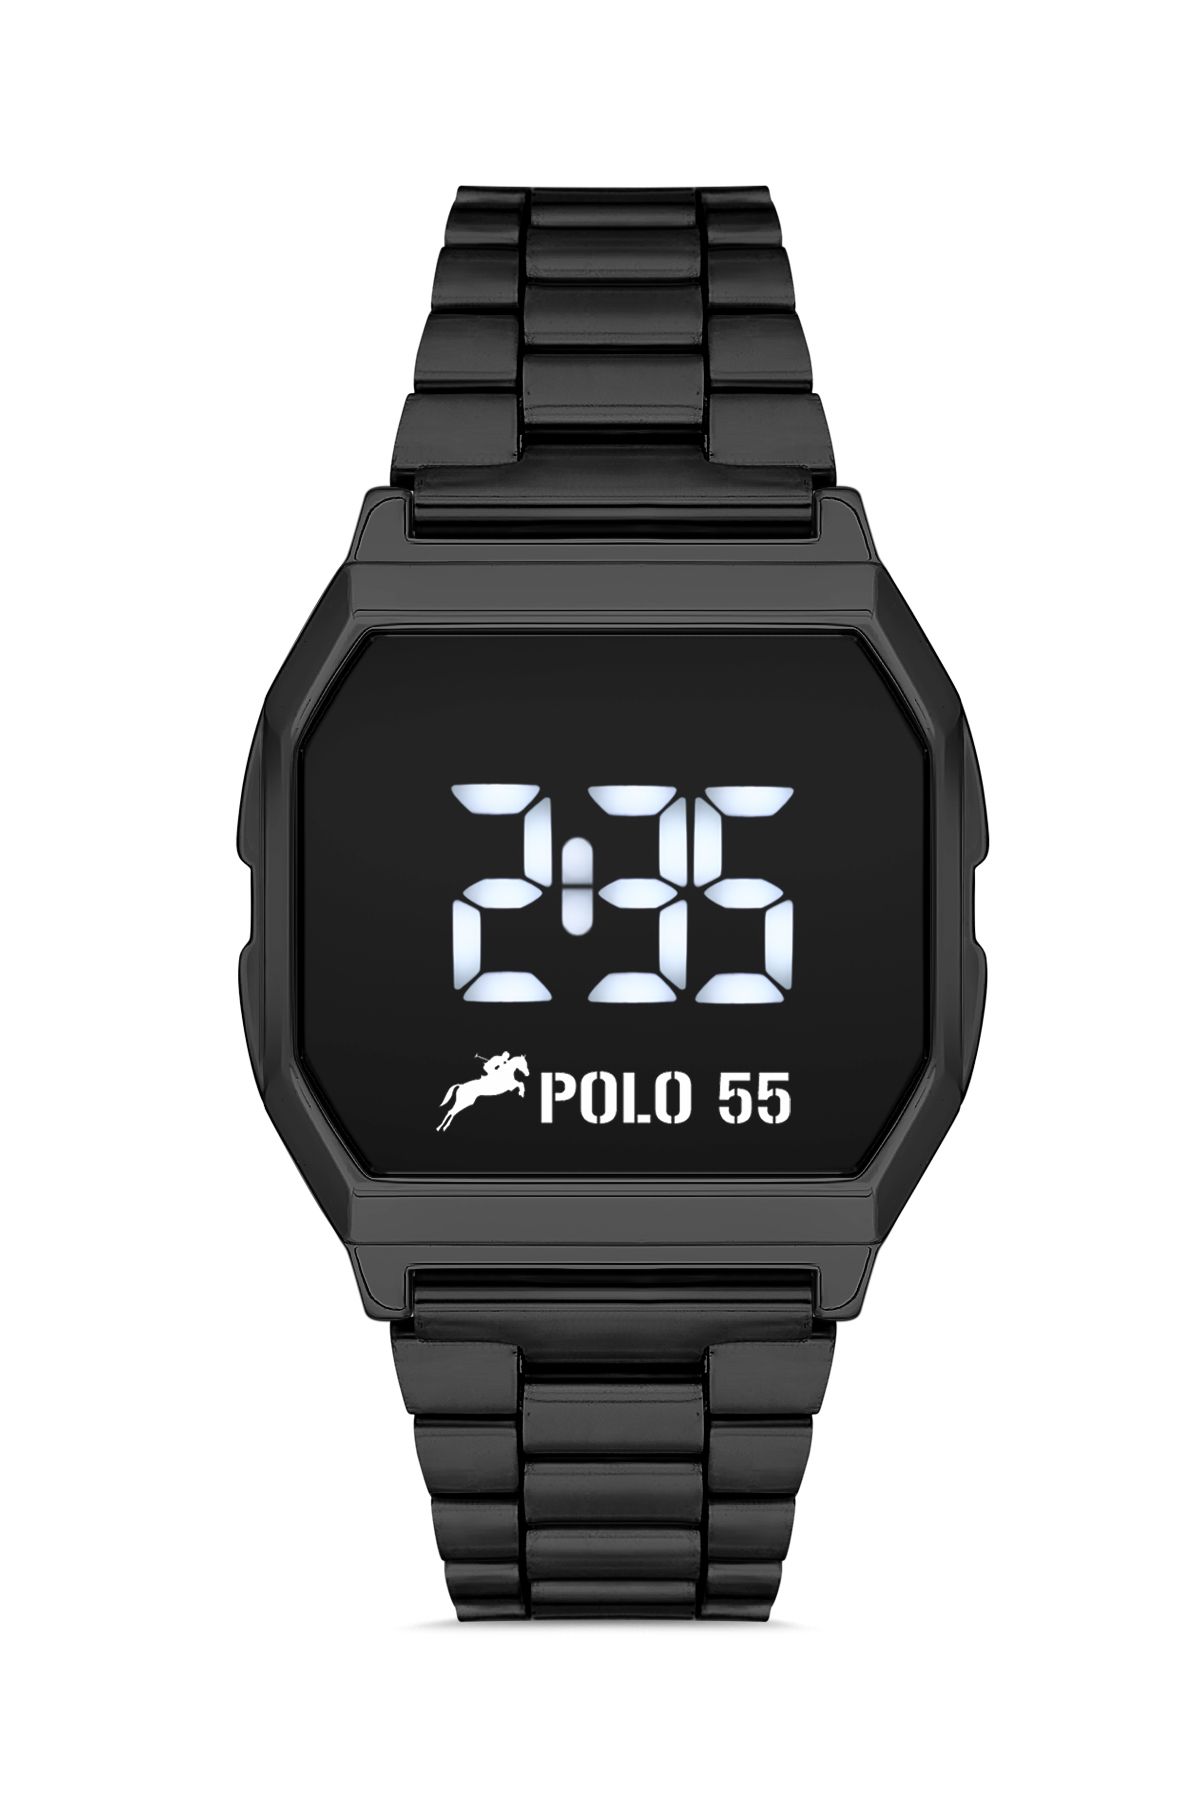 Polo55 Siyah Zamansız Tasarım Dokunmatik Dijital Metal Kordon Retro Erkek Kol Saati